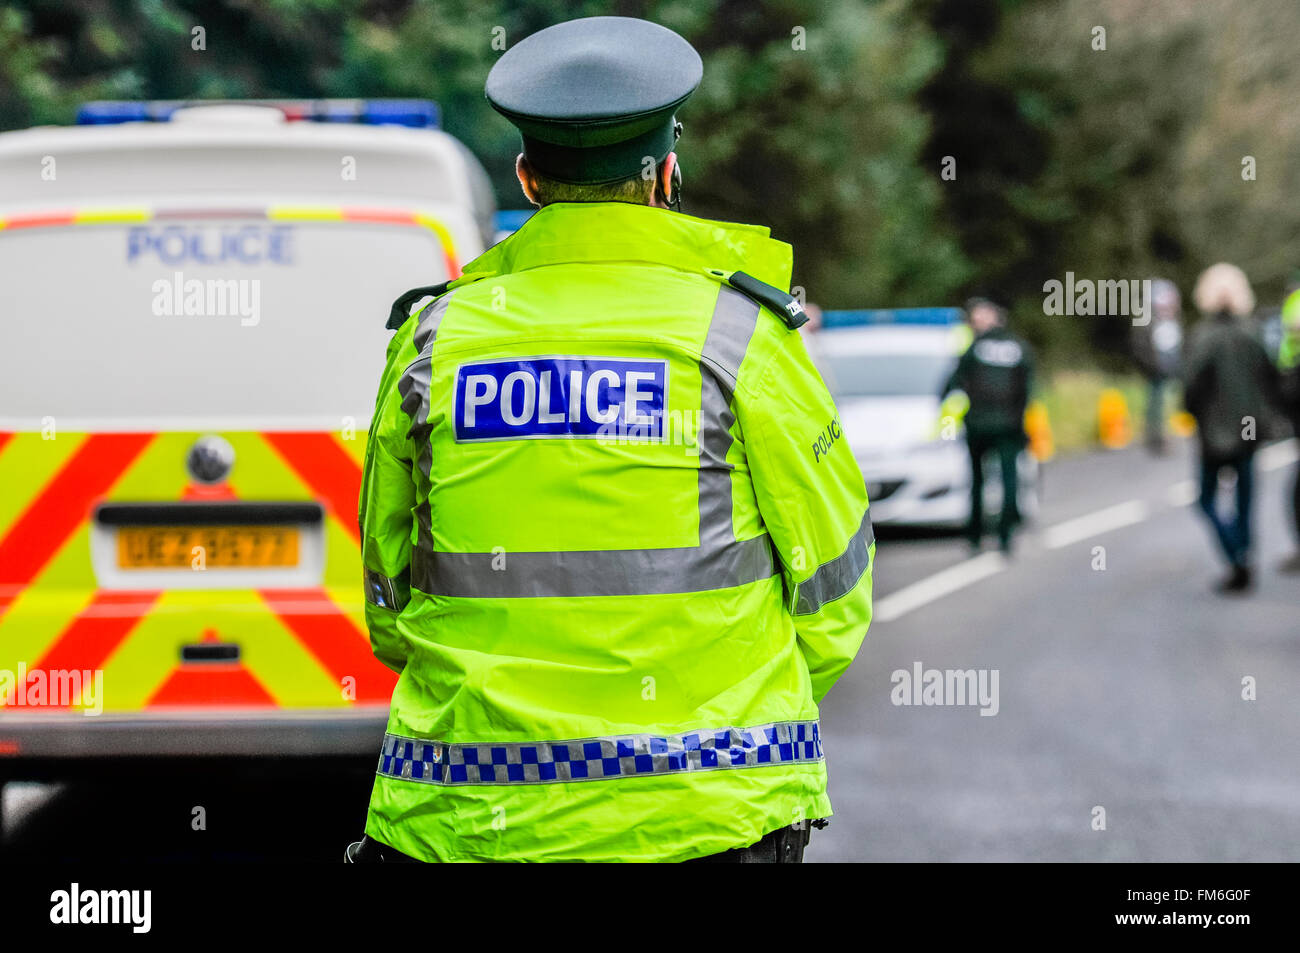 Polizei im Dienst an einer Straße Verkehrsbehinderung Hochsicht Jacke tragen Stockfoto